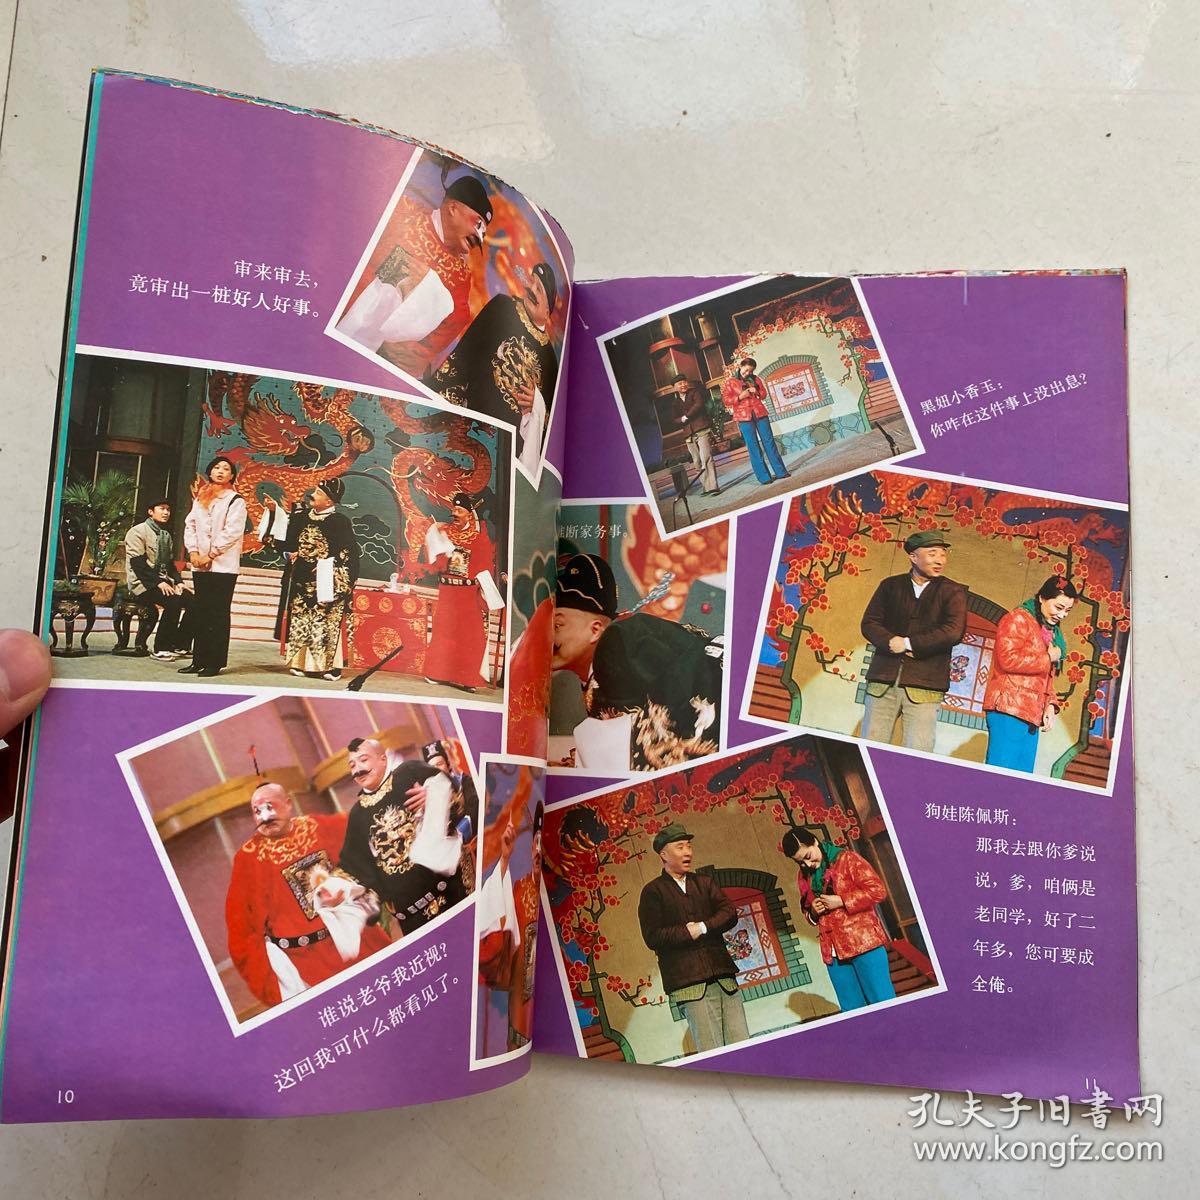 1988春节联欢晚会完整图片